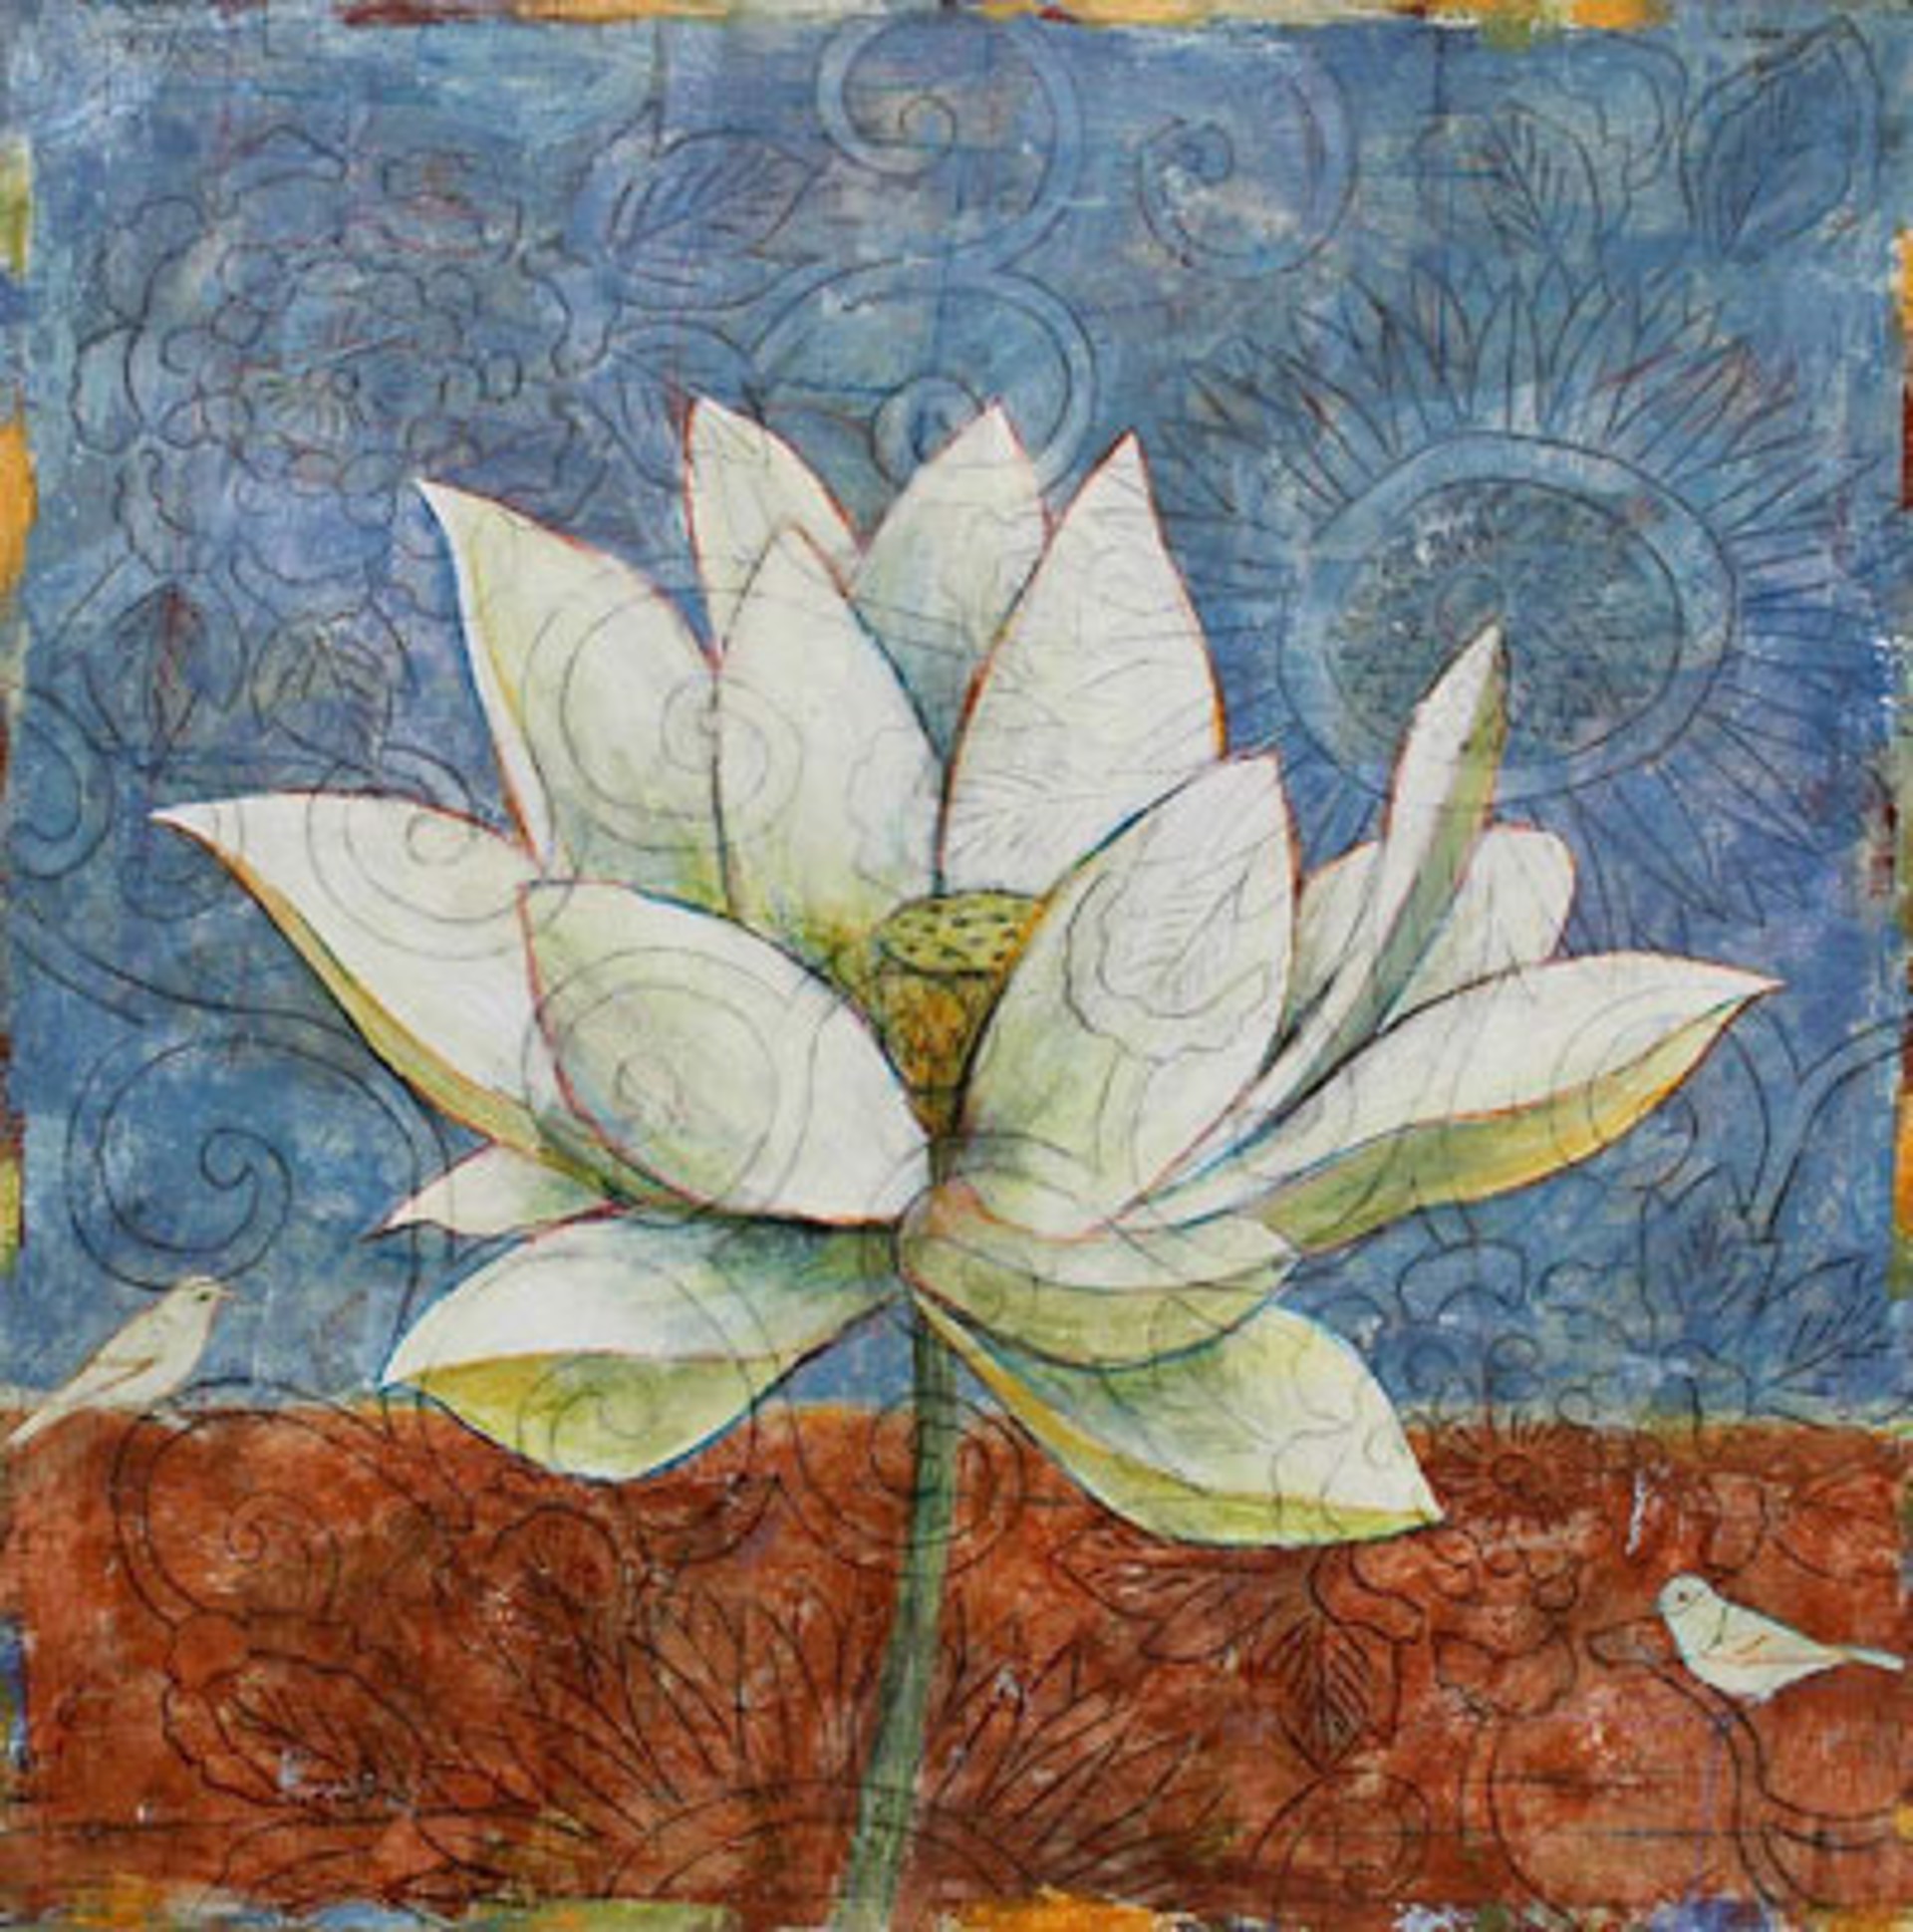 Lotus Flower #2 by Paul Brigham